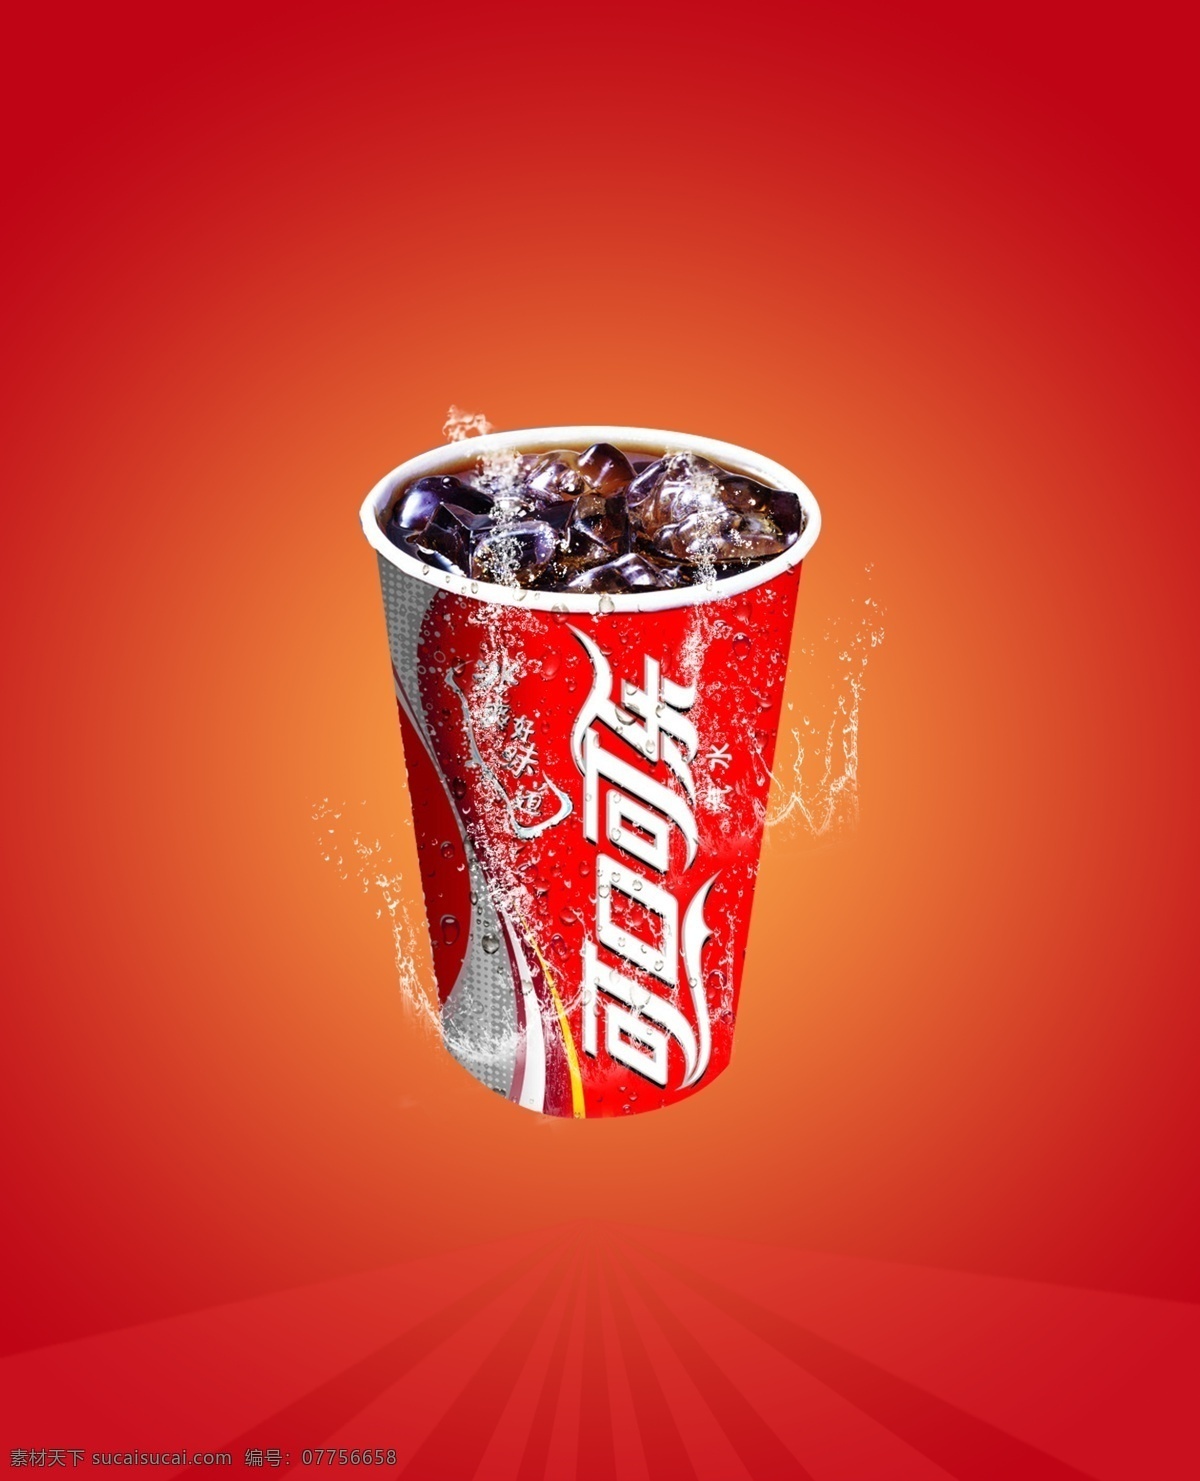 可口可乐海报 可口可乐广告 汽水 饮料 水珠 一杯可乐 可口可乐杯子 可乐海报 可乐广告 海报 广告 广告设计模板 源文件